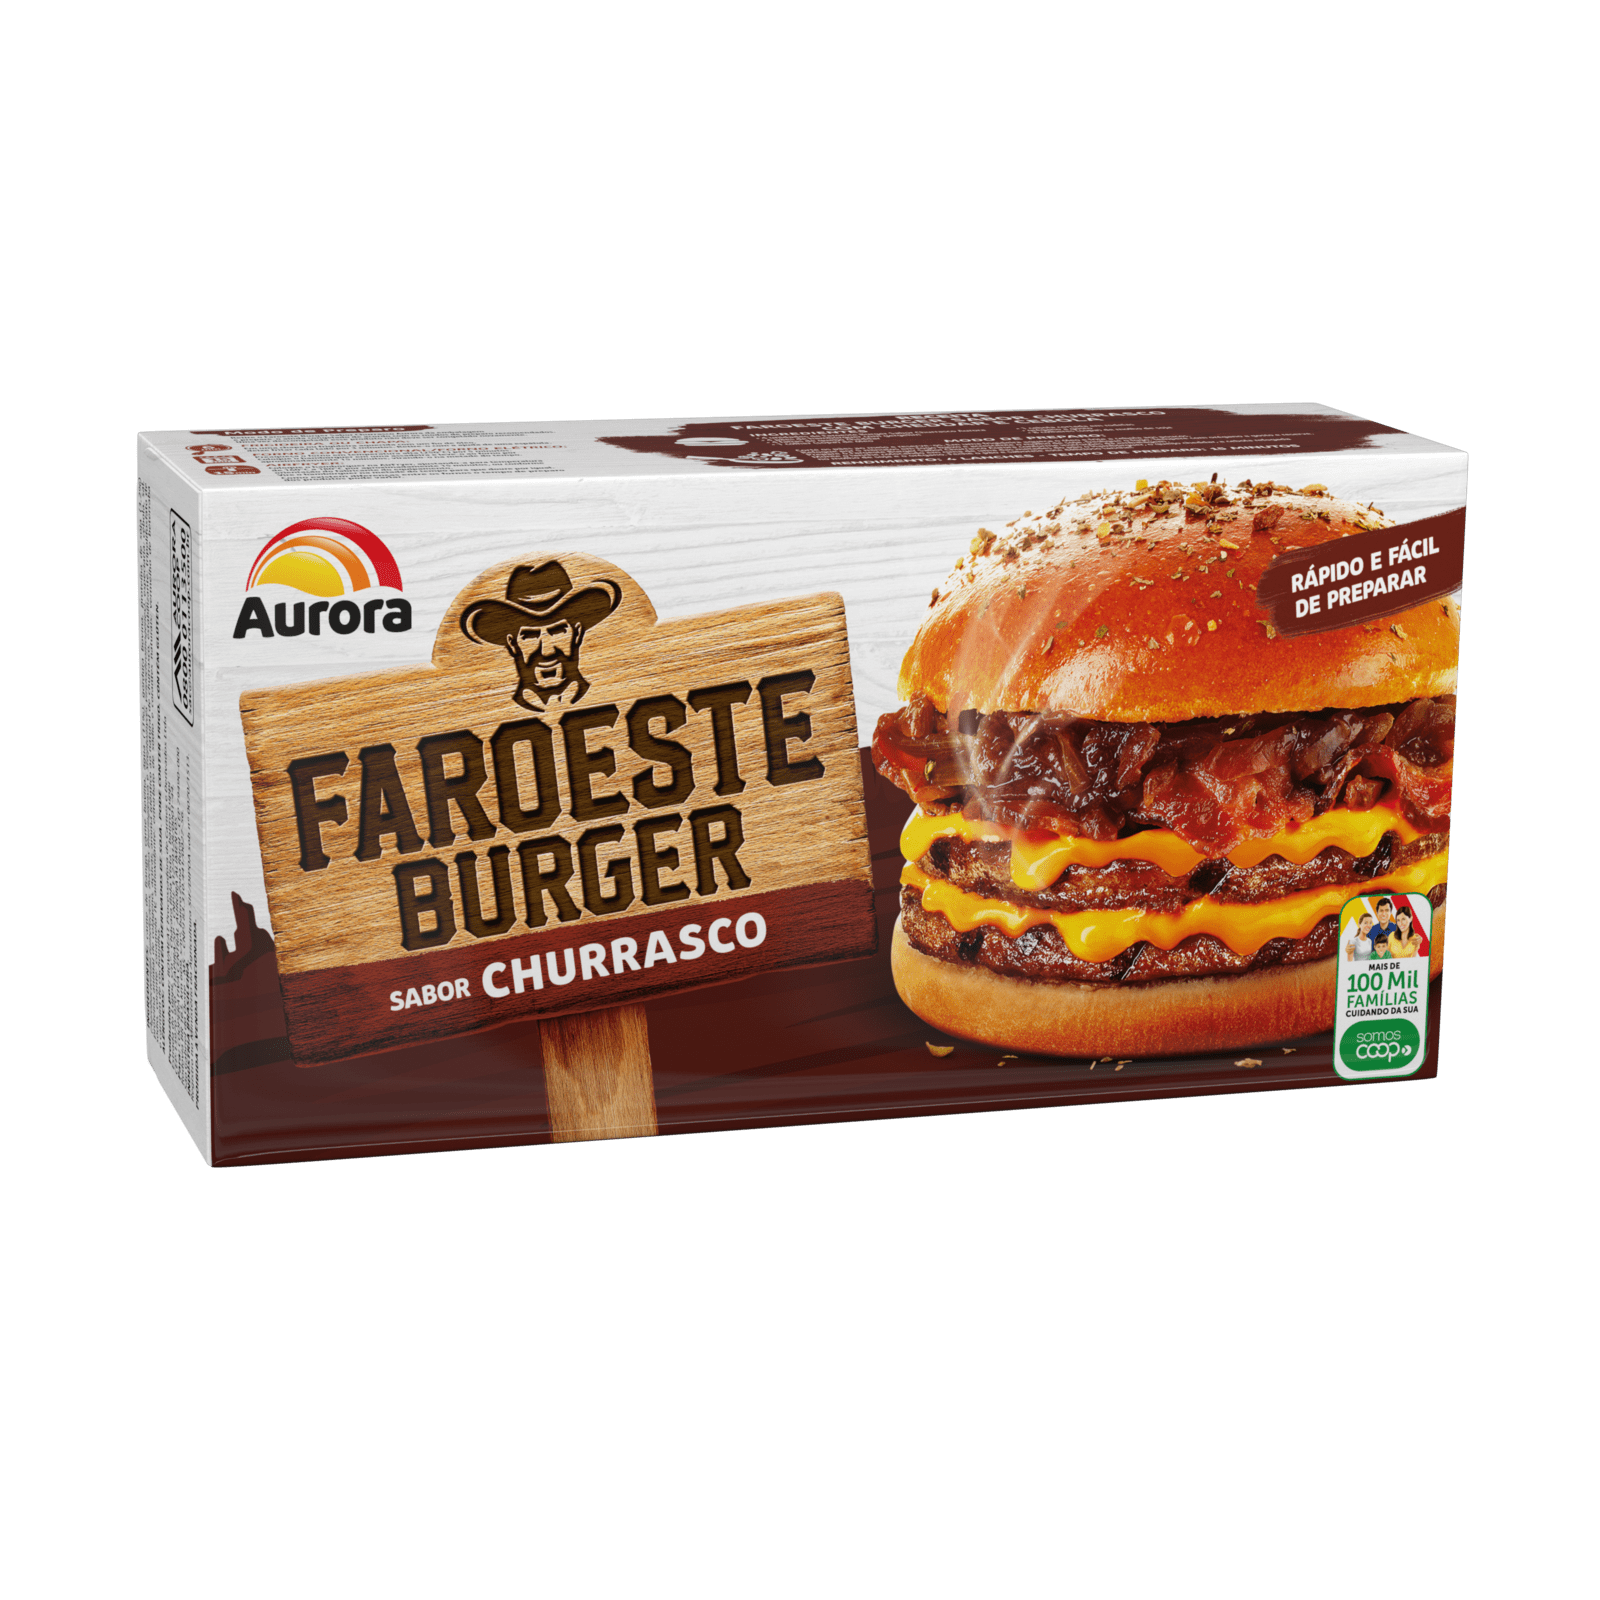 faroeste-burger-churrasco-caixeta-aurora